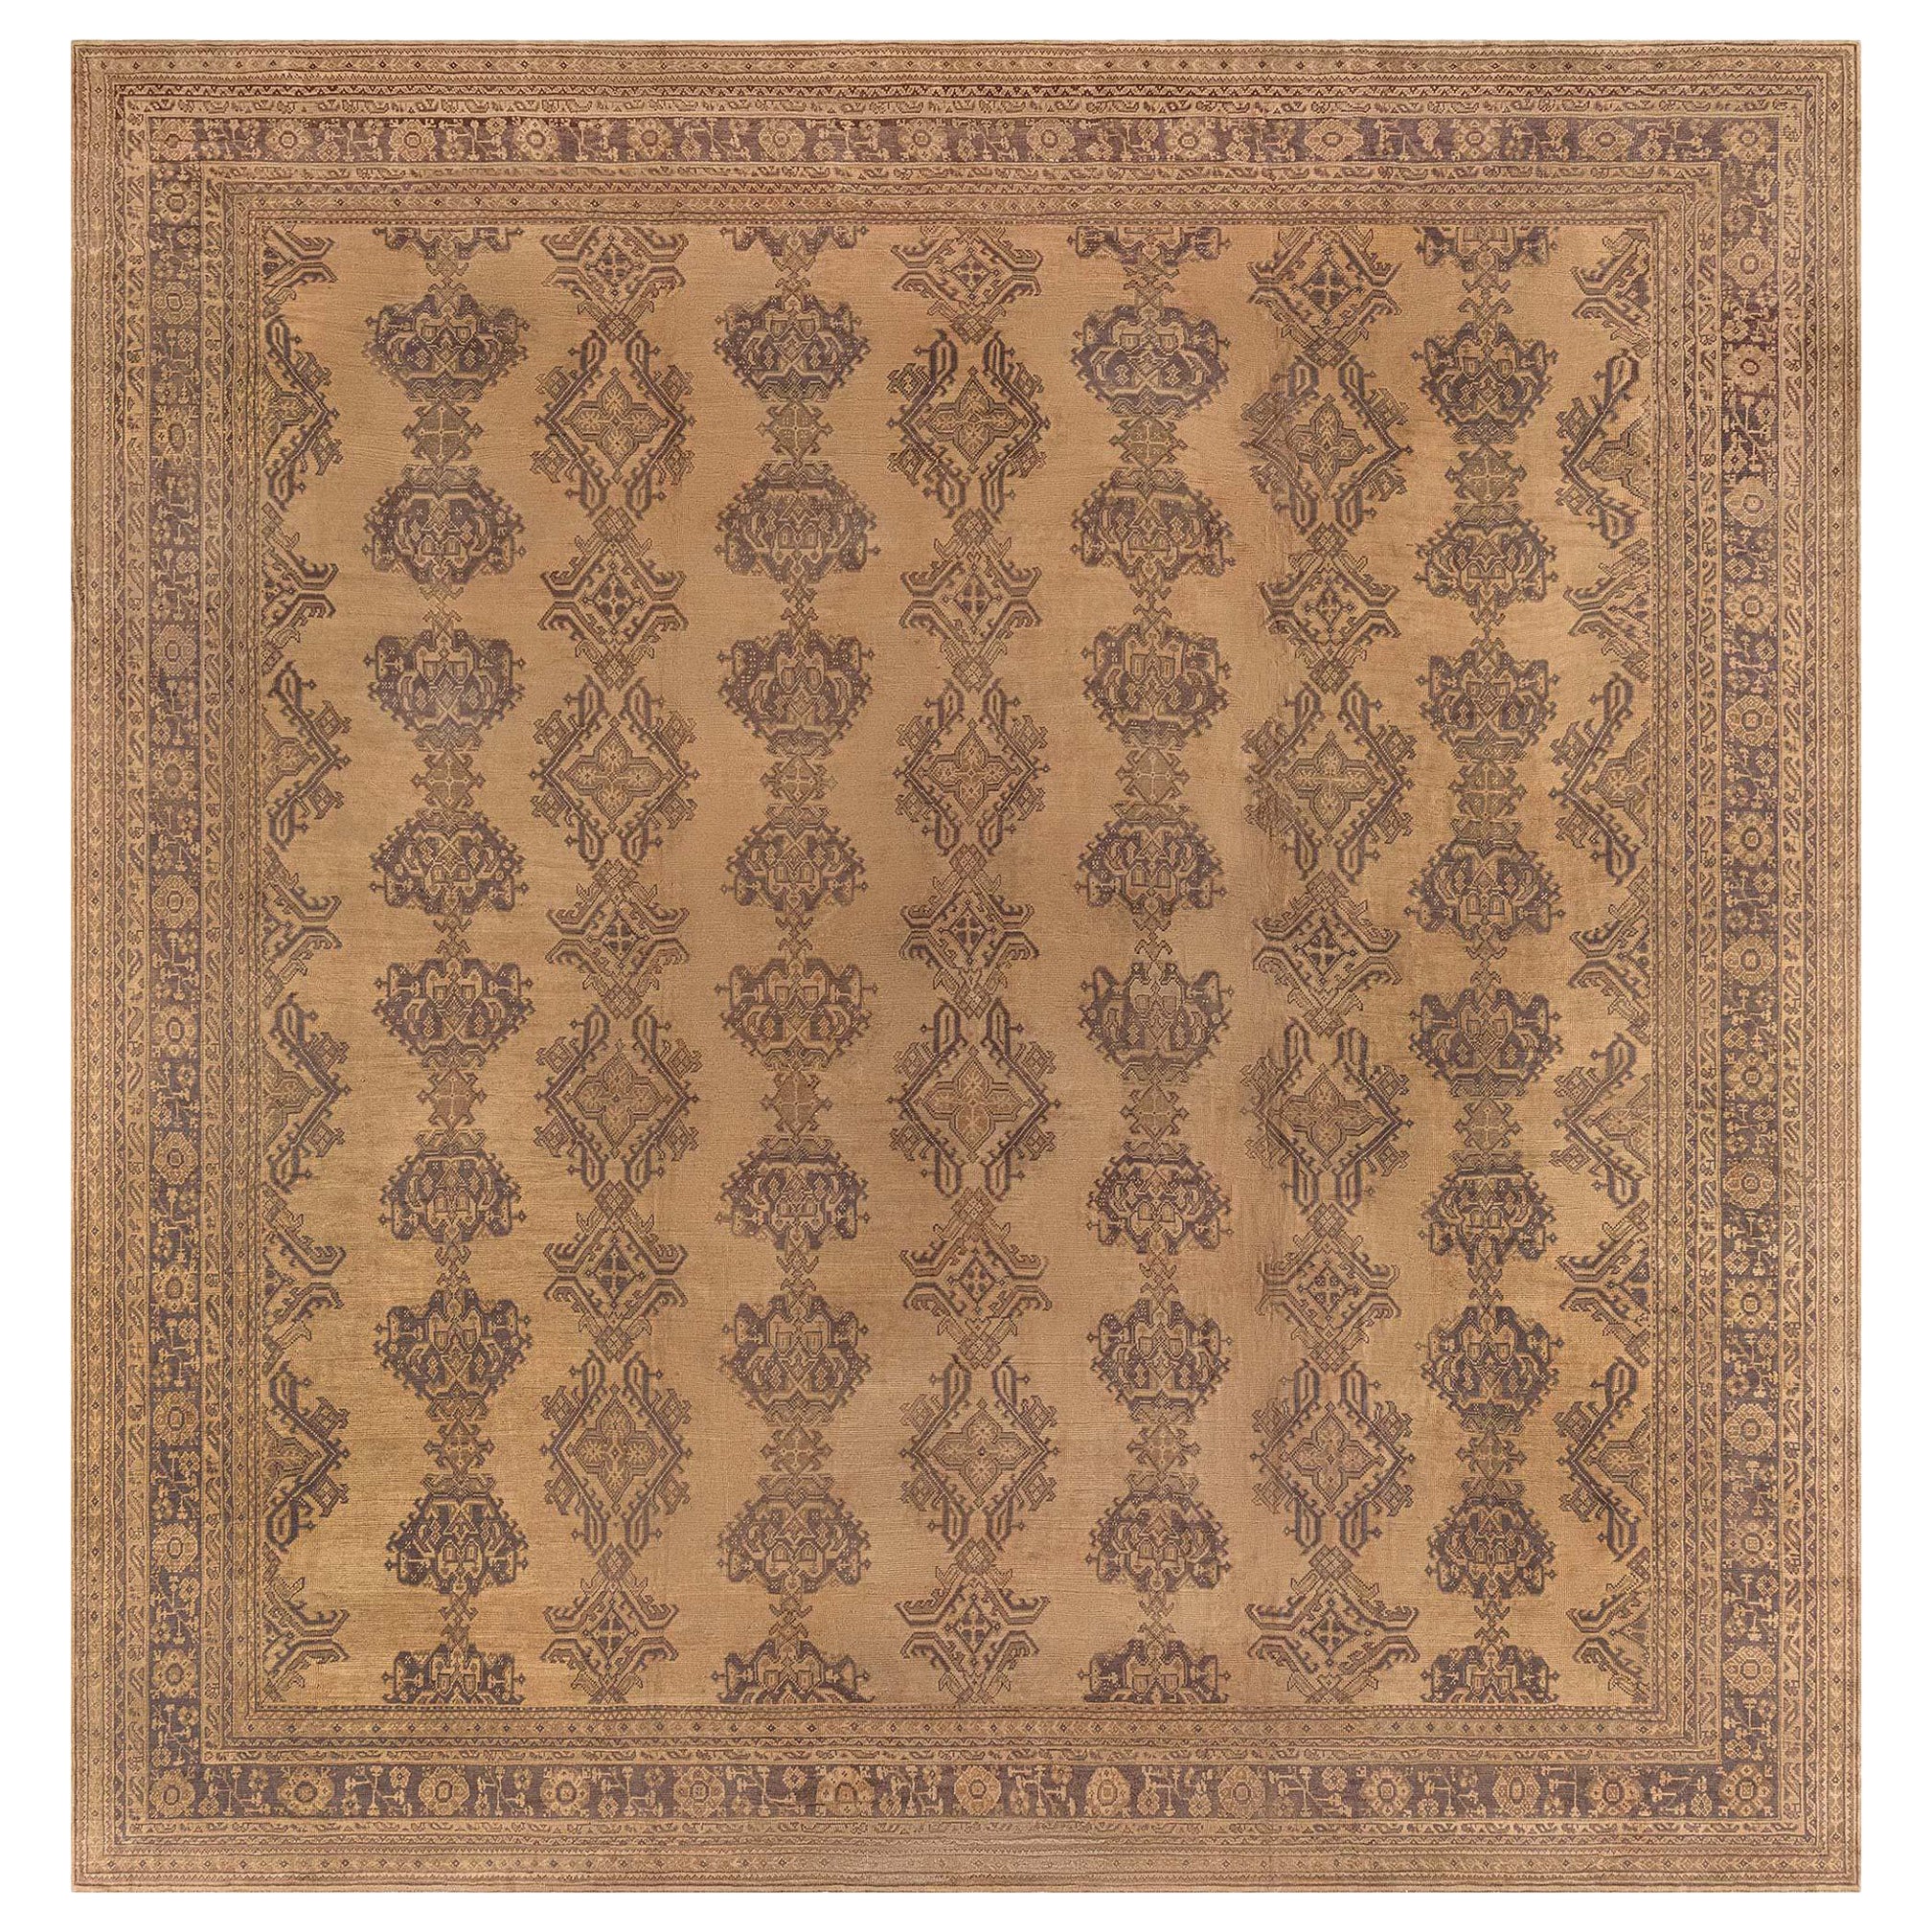 Authentique tapis turc Oushak surdimensionné des années 1900